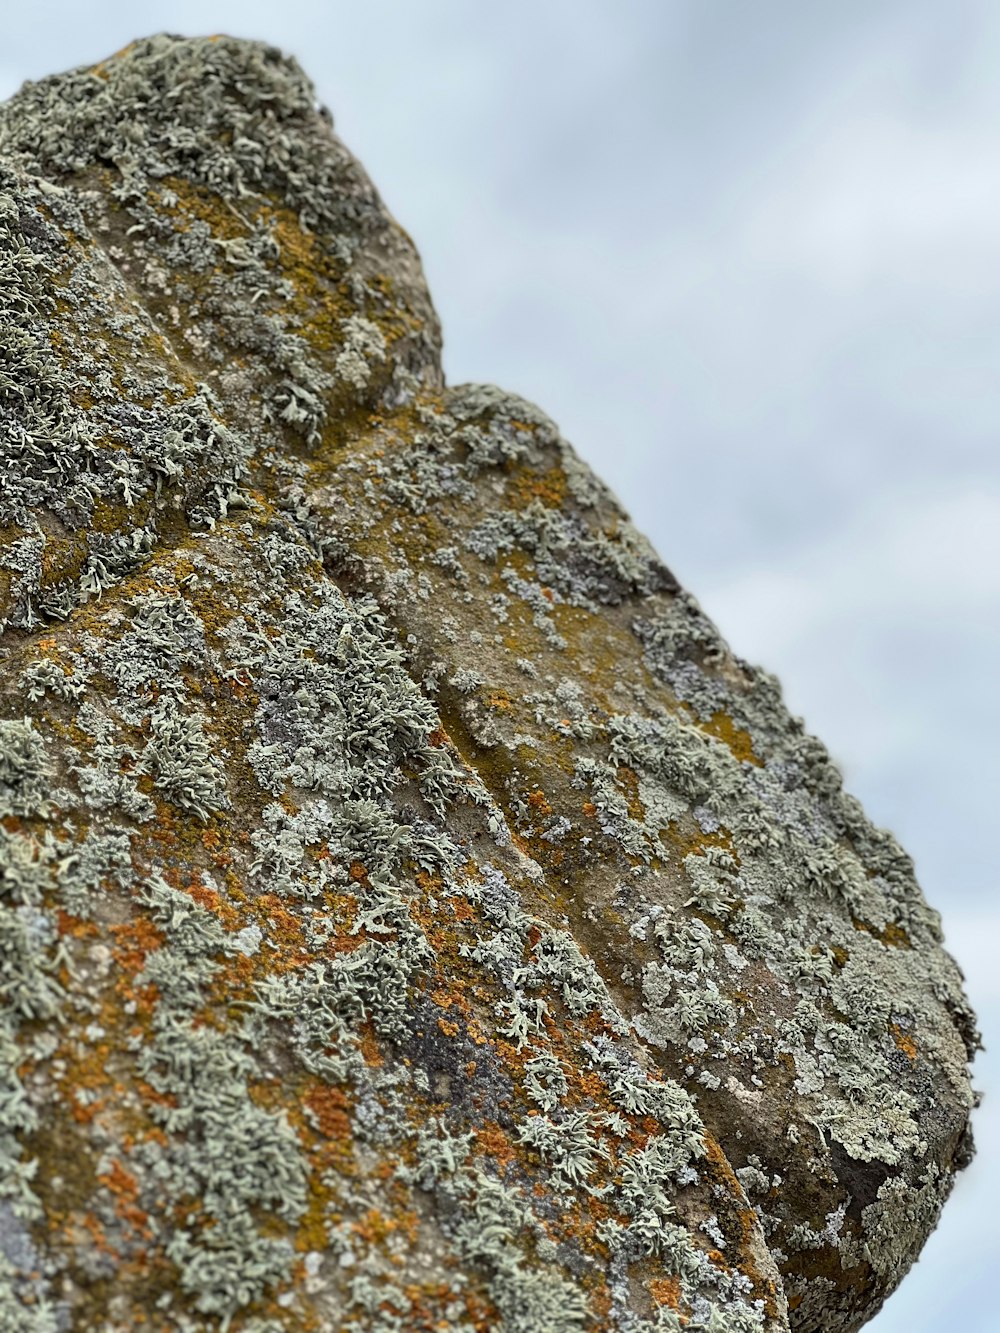 Un primer plano de una roca con musgo creciendo en ella